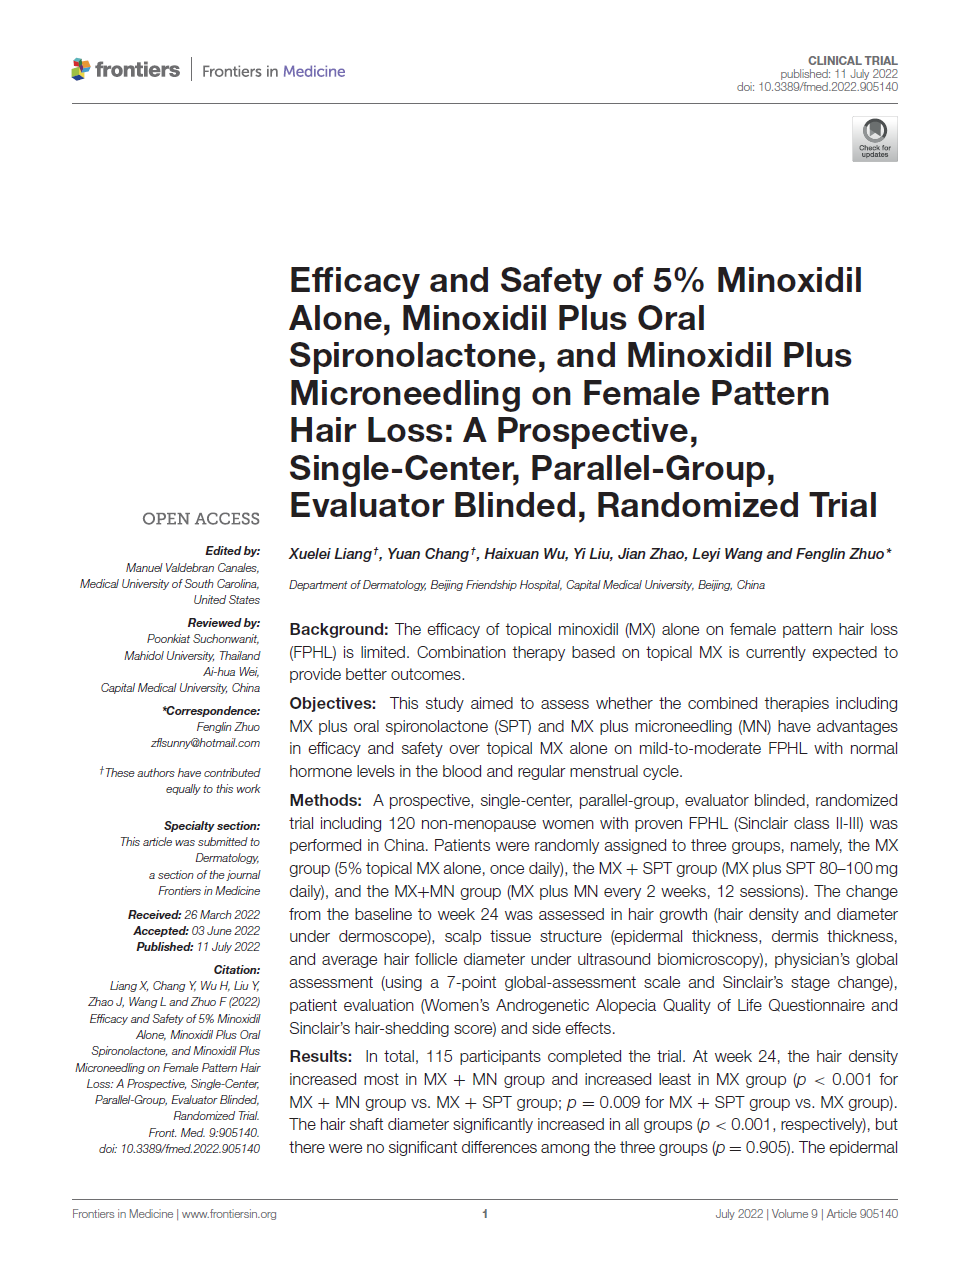 미녹시딜과 MTS 시술에 대한 논문 발표 자료